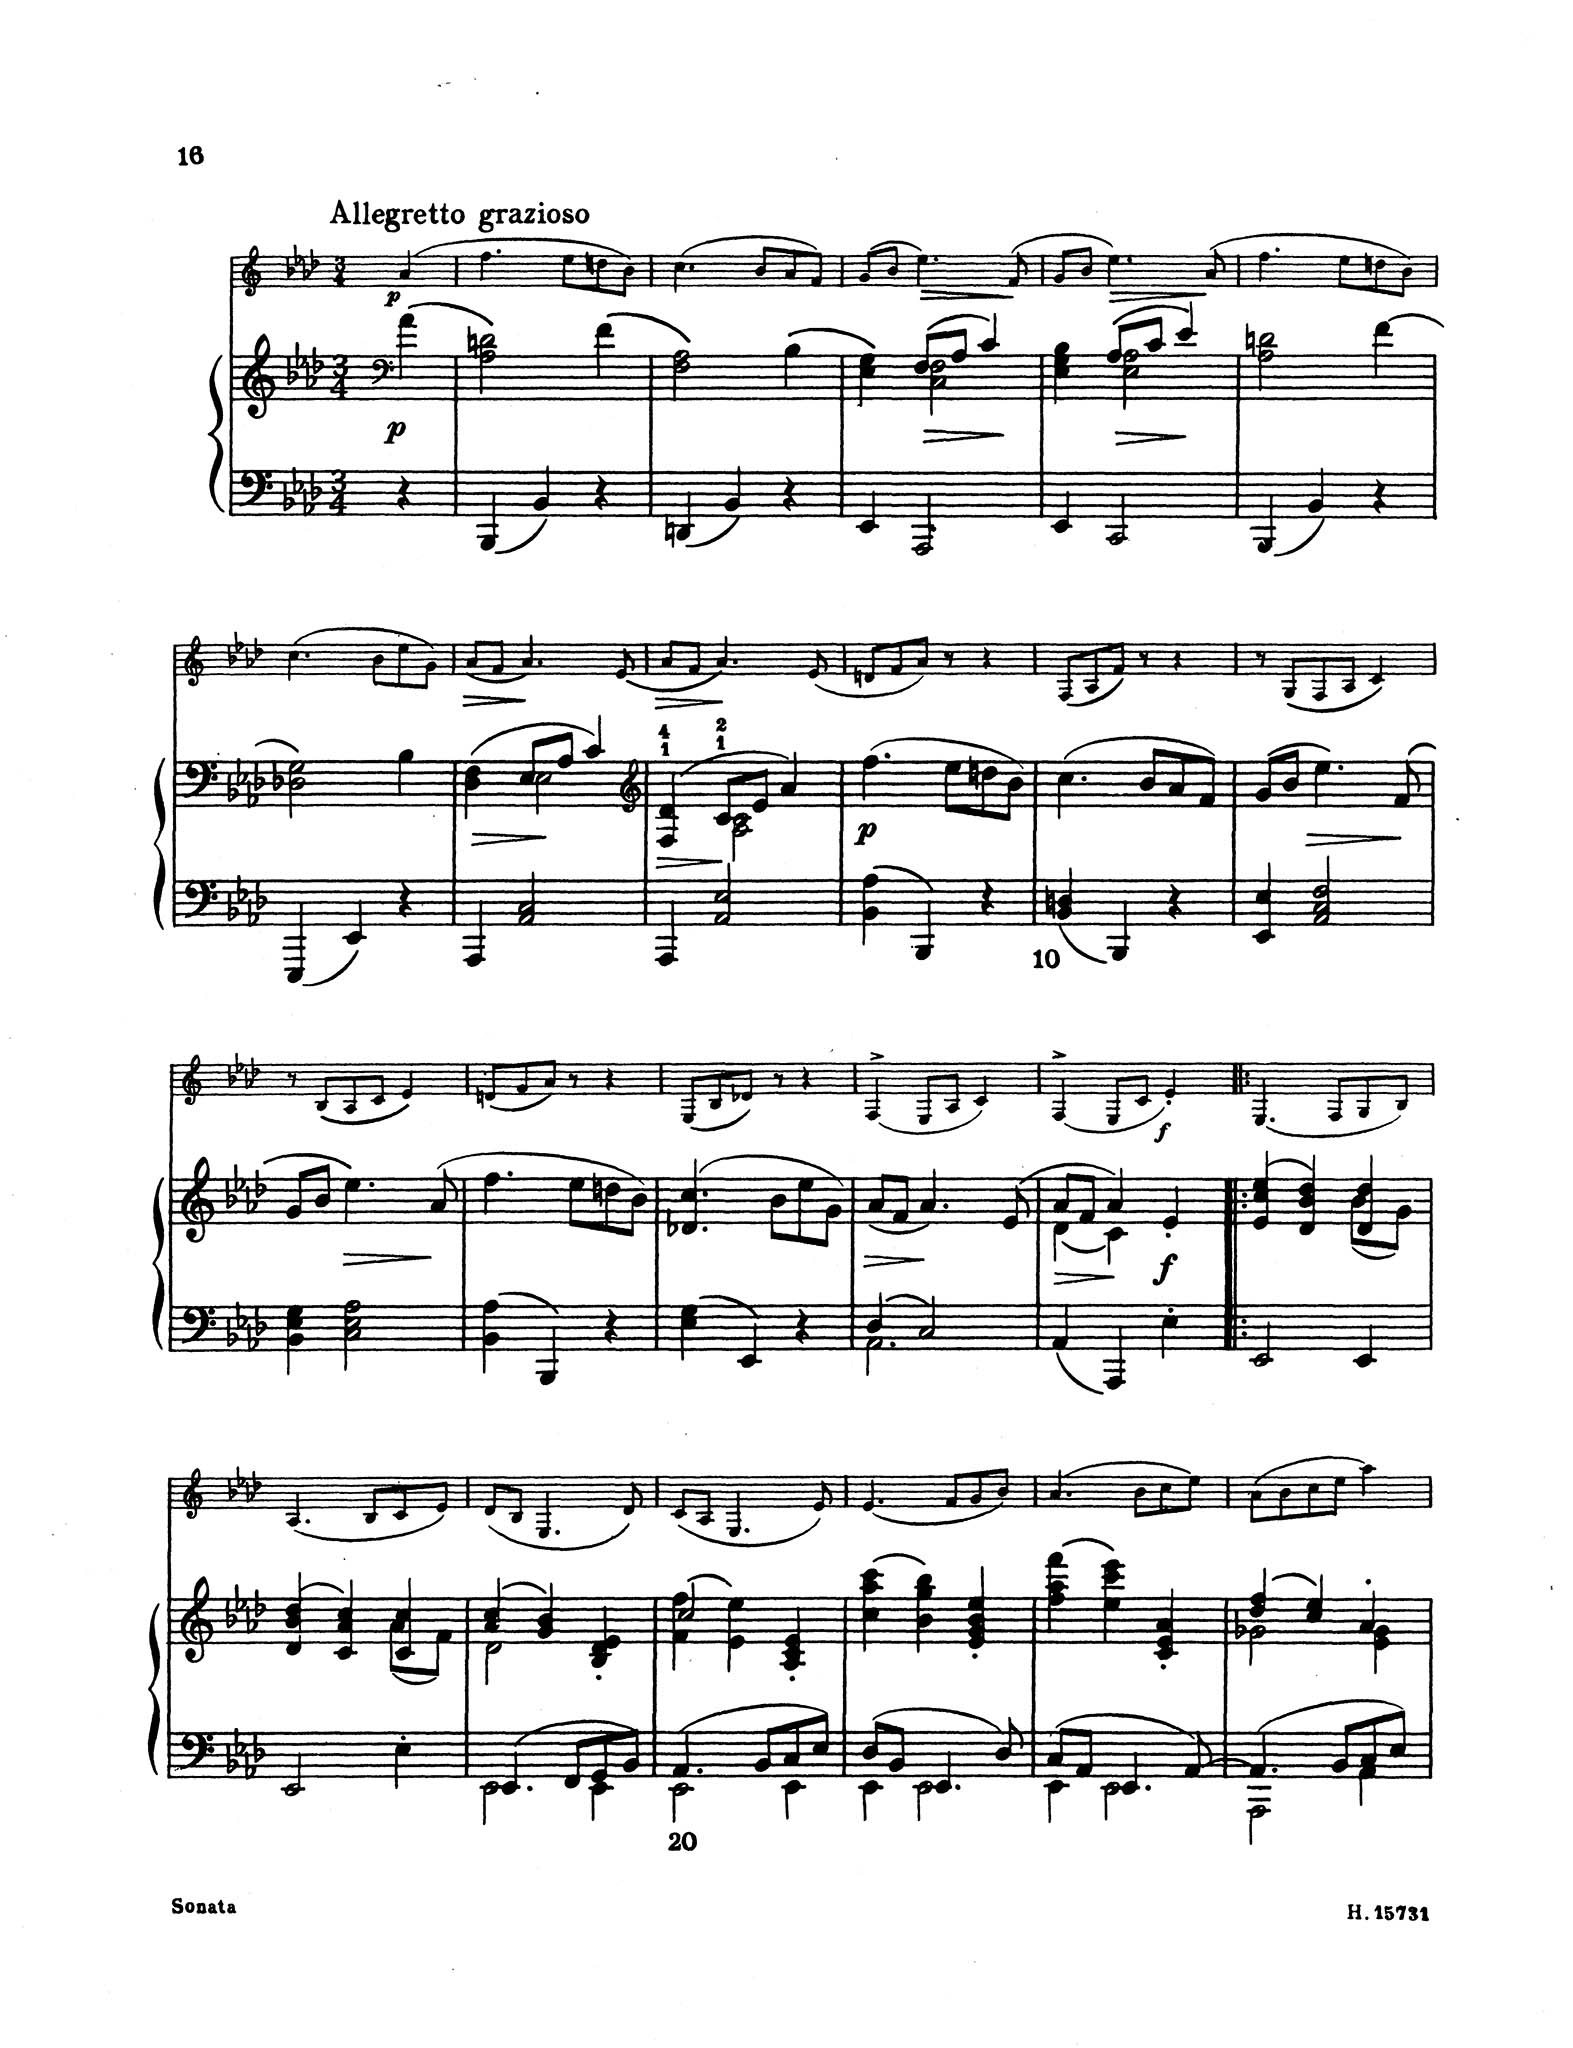 Sonata in F Minor, Op. 120 No. 1 - Movement 3